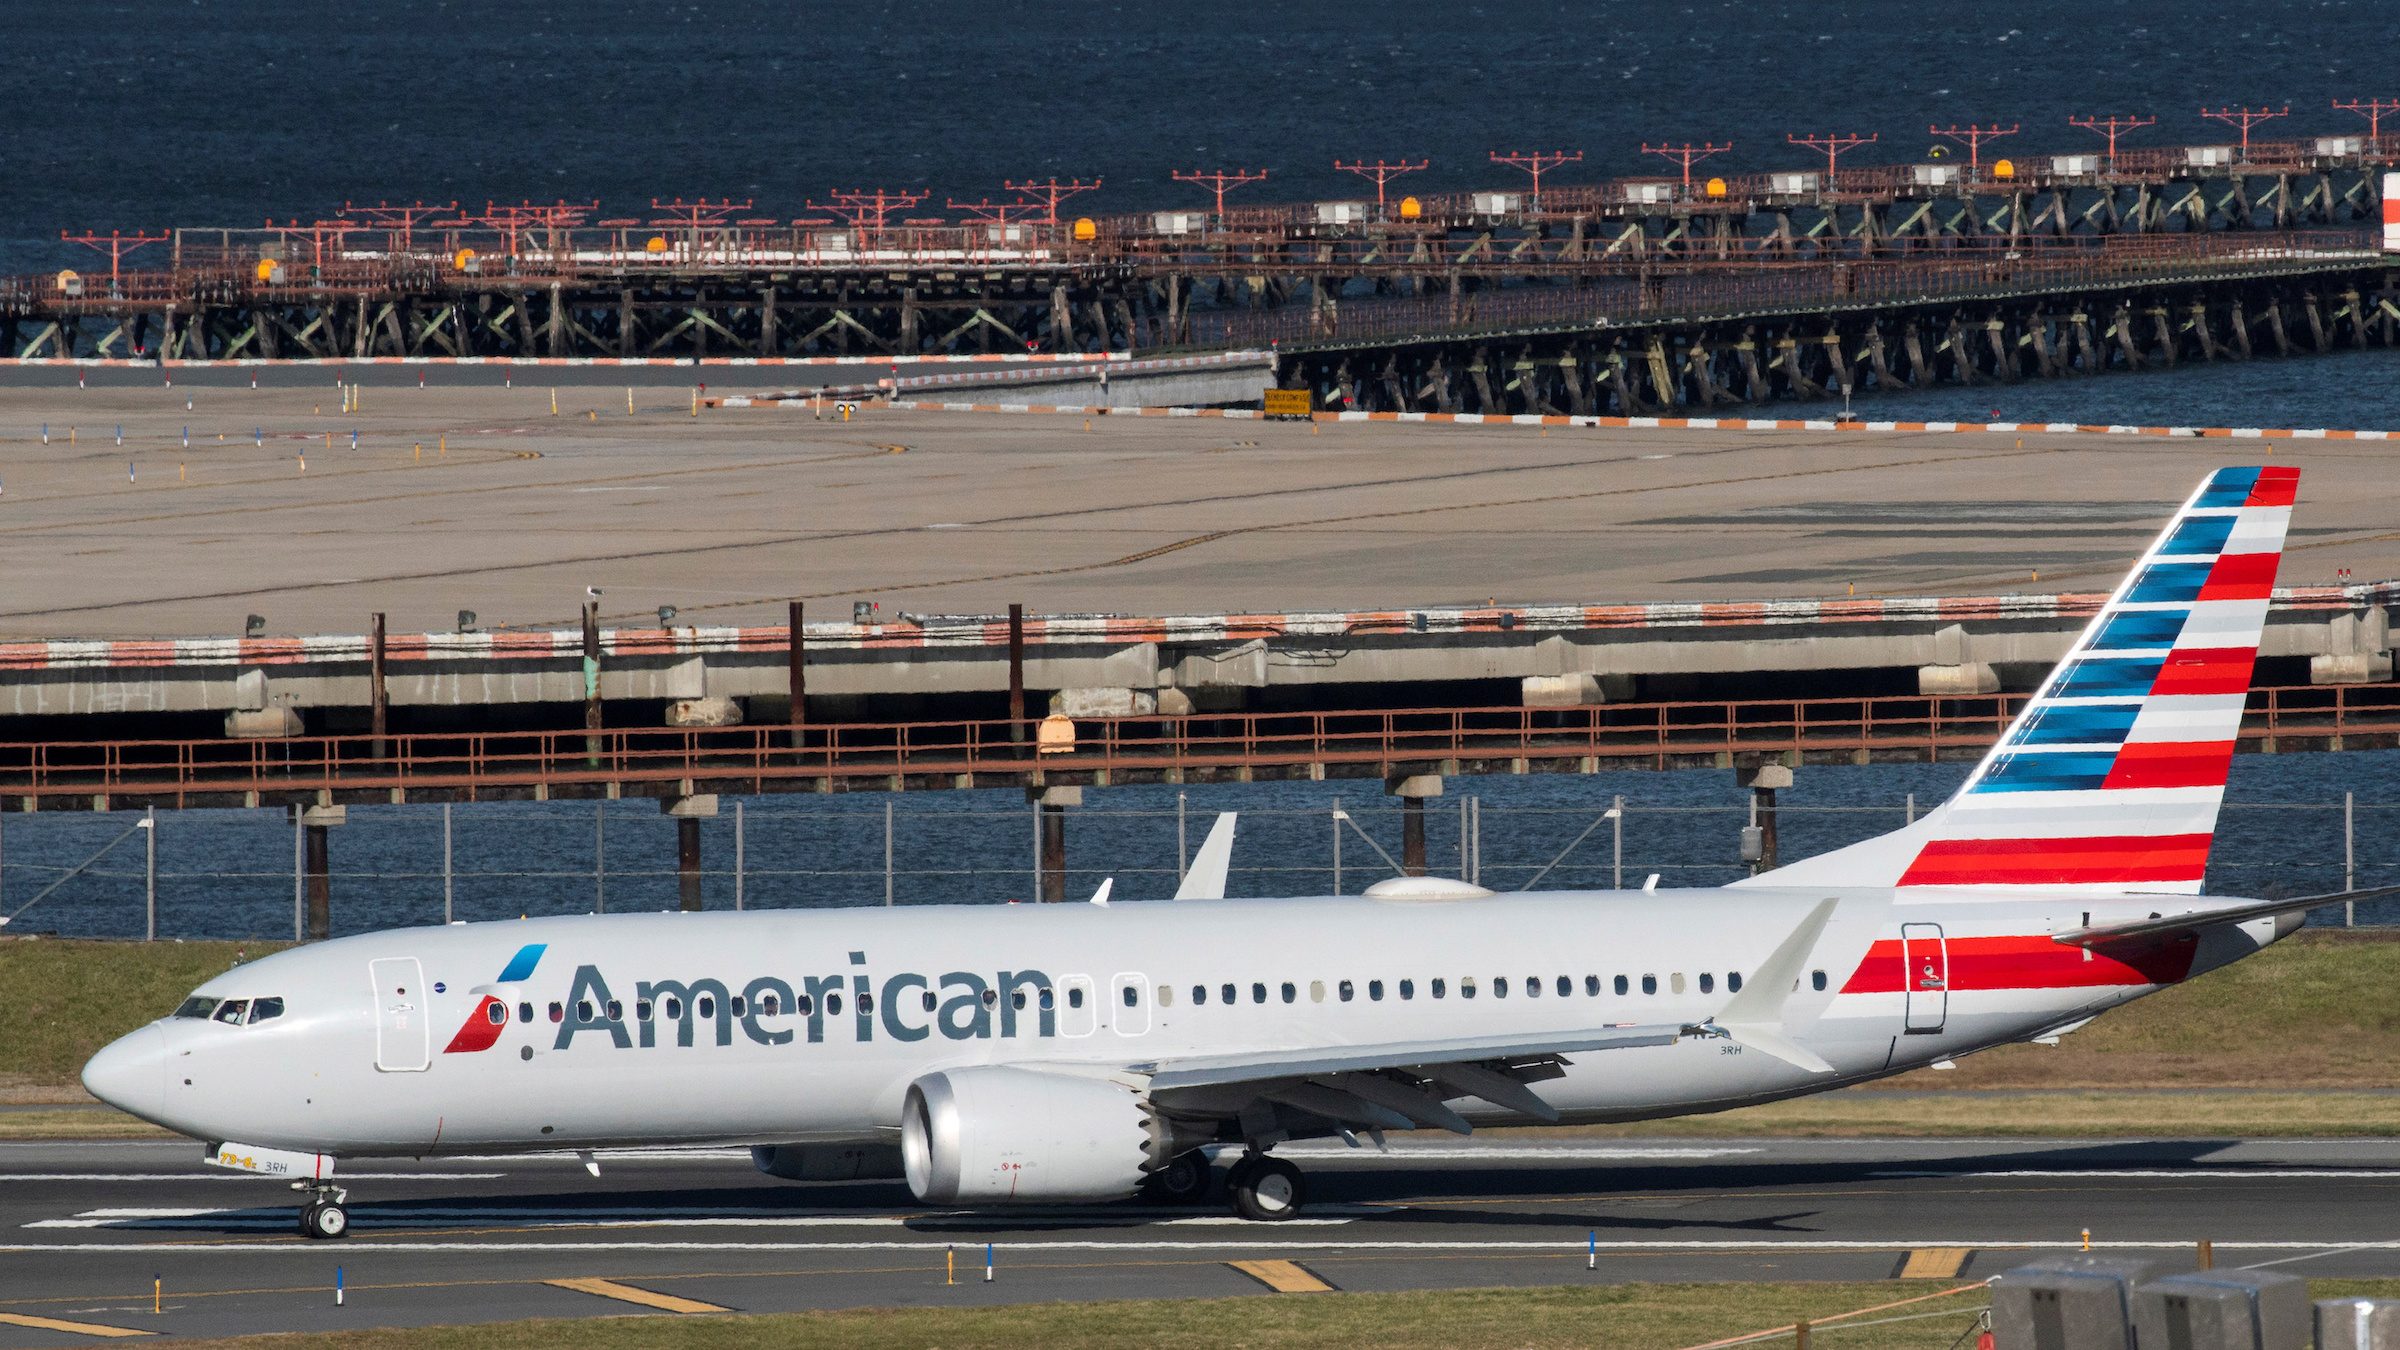 American Airlines sending 13,000 furlough warnings as pandemic pain persists